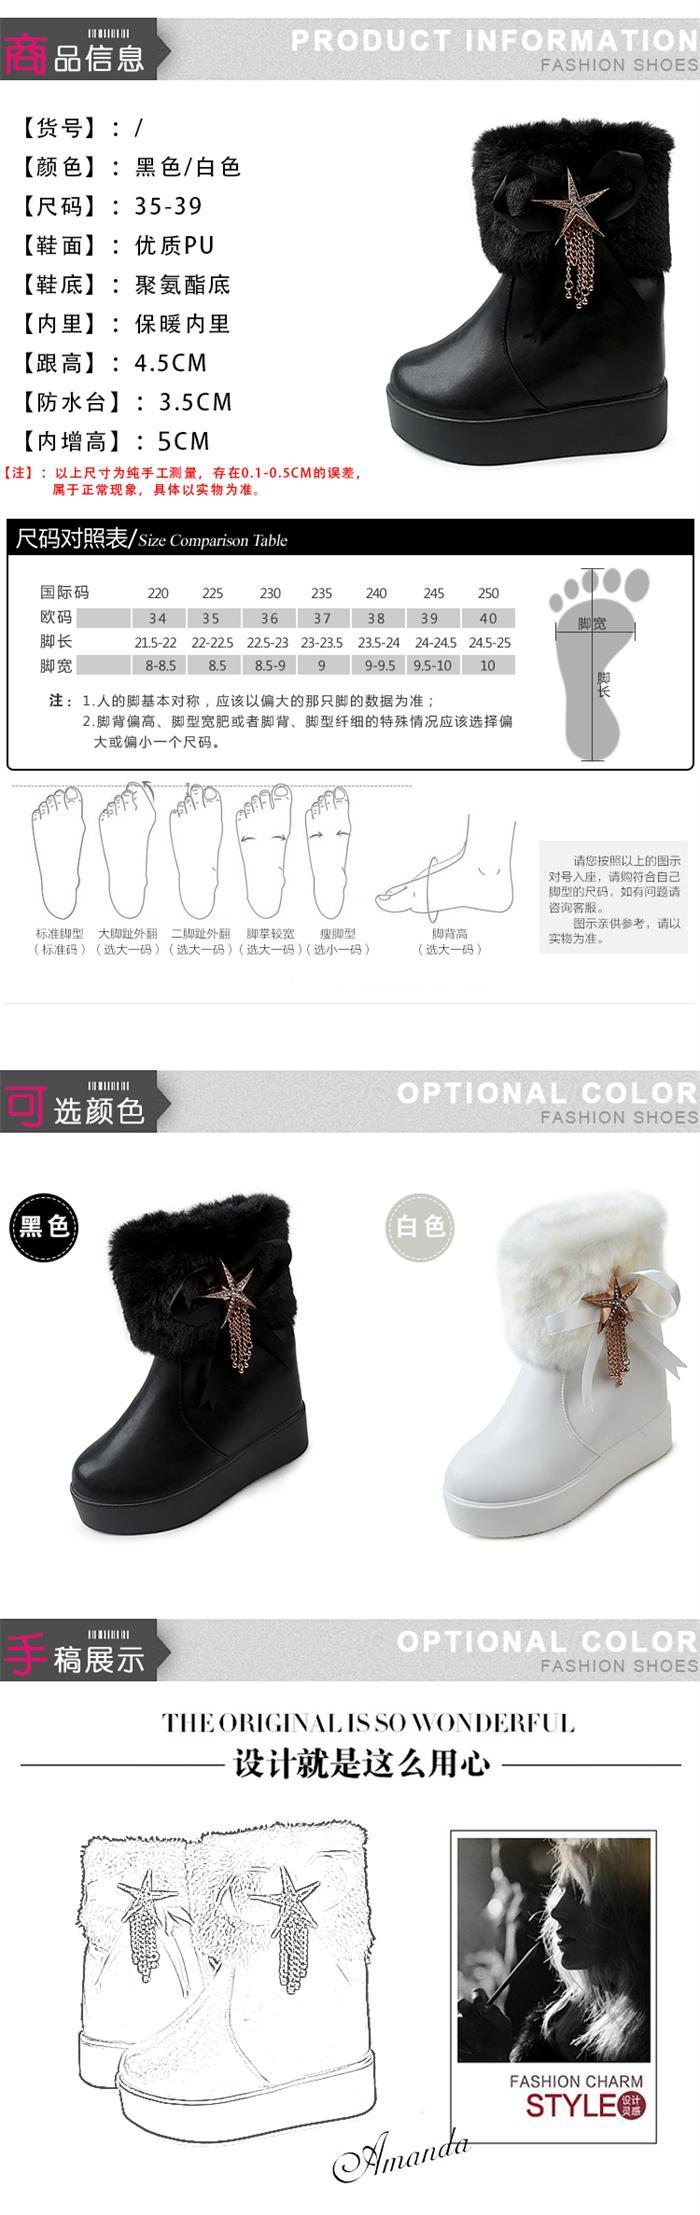 韩版短靴女加棉加厚短筒靴子内增高毛毛筒棉靴冬季百搭保暖女鞋子